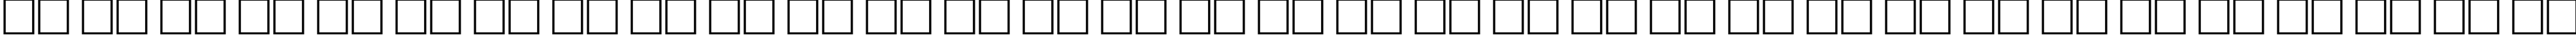 Пример написания русского алфавита шрифтом Desdemona